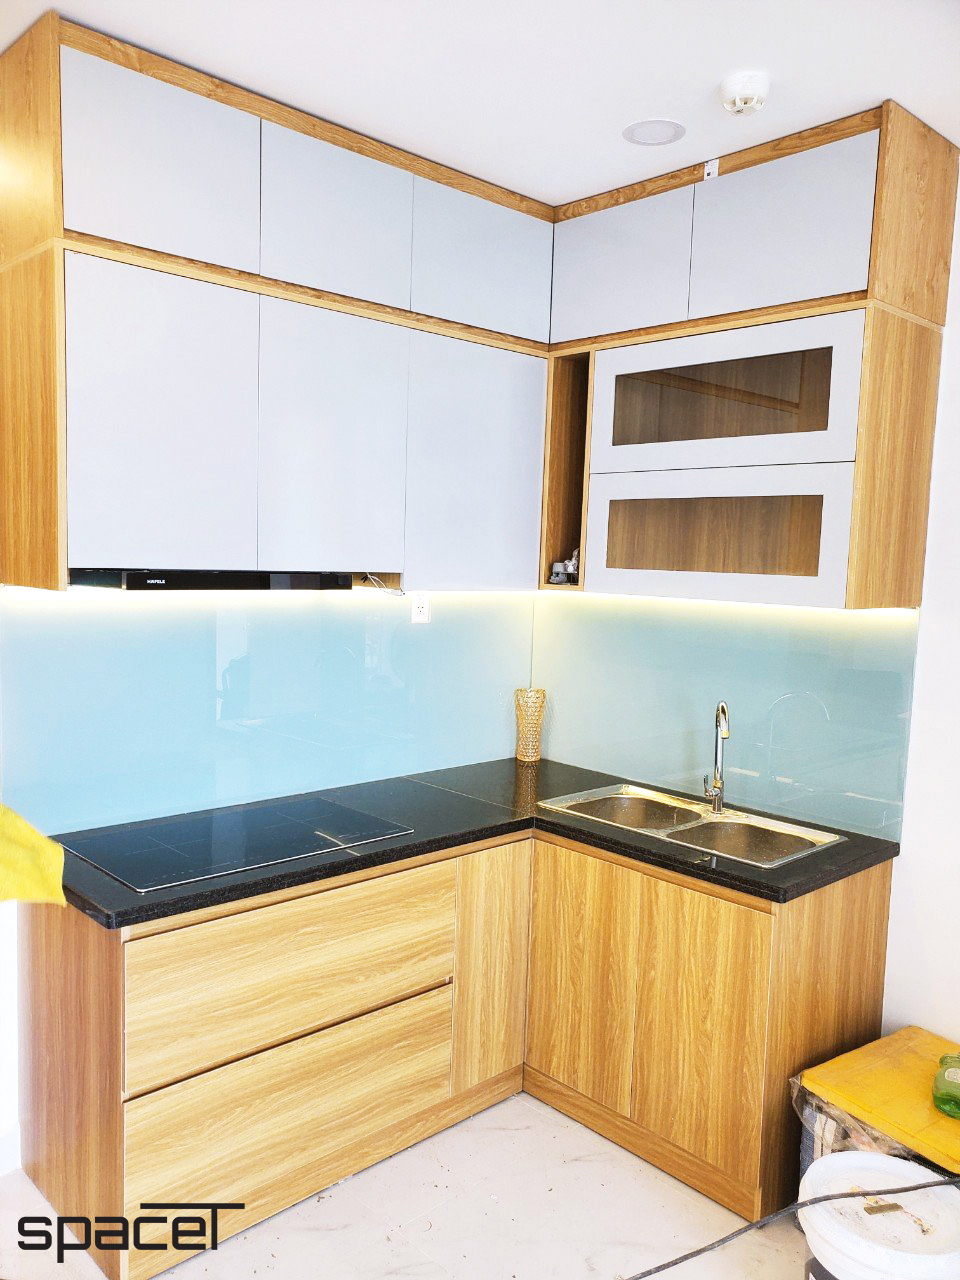 Phòng bếp, phong cách hiện đại Modern, hoàn thiện nội thất, căn hộ Terra Mia Bình Chánh.